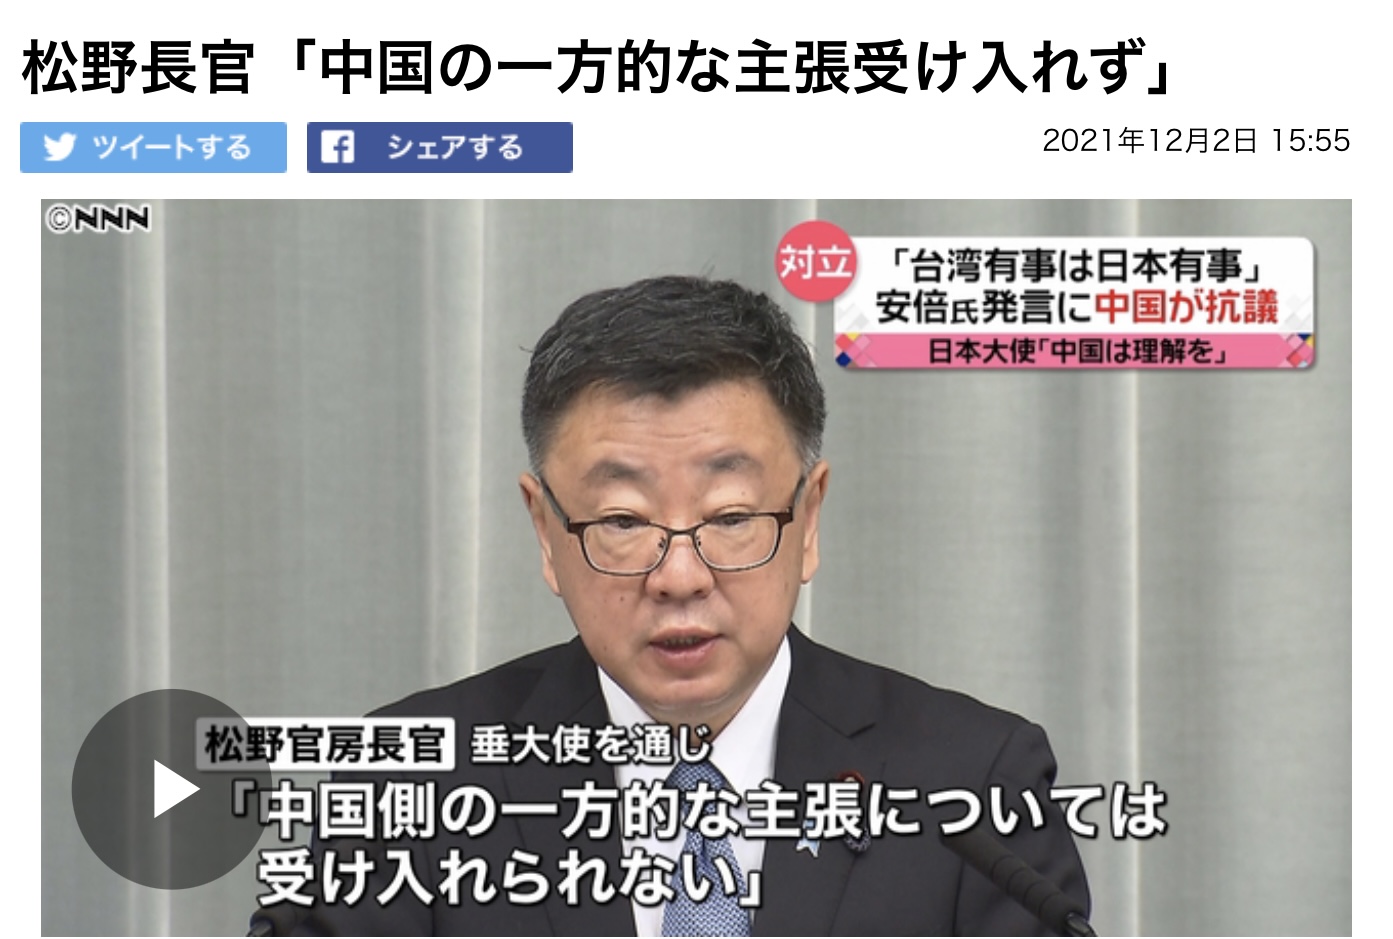 日本官房長官松野博一表示透過日本大使對中表明日本無法片面接受中國主張。 圖:攝自NNN新聞